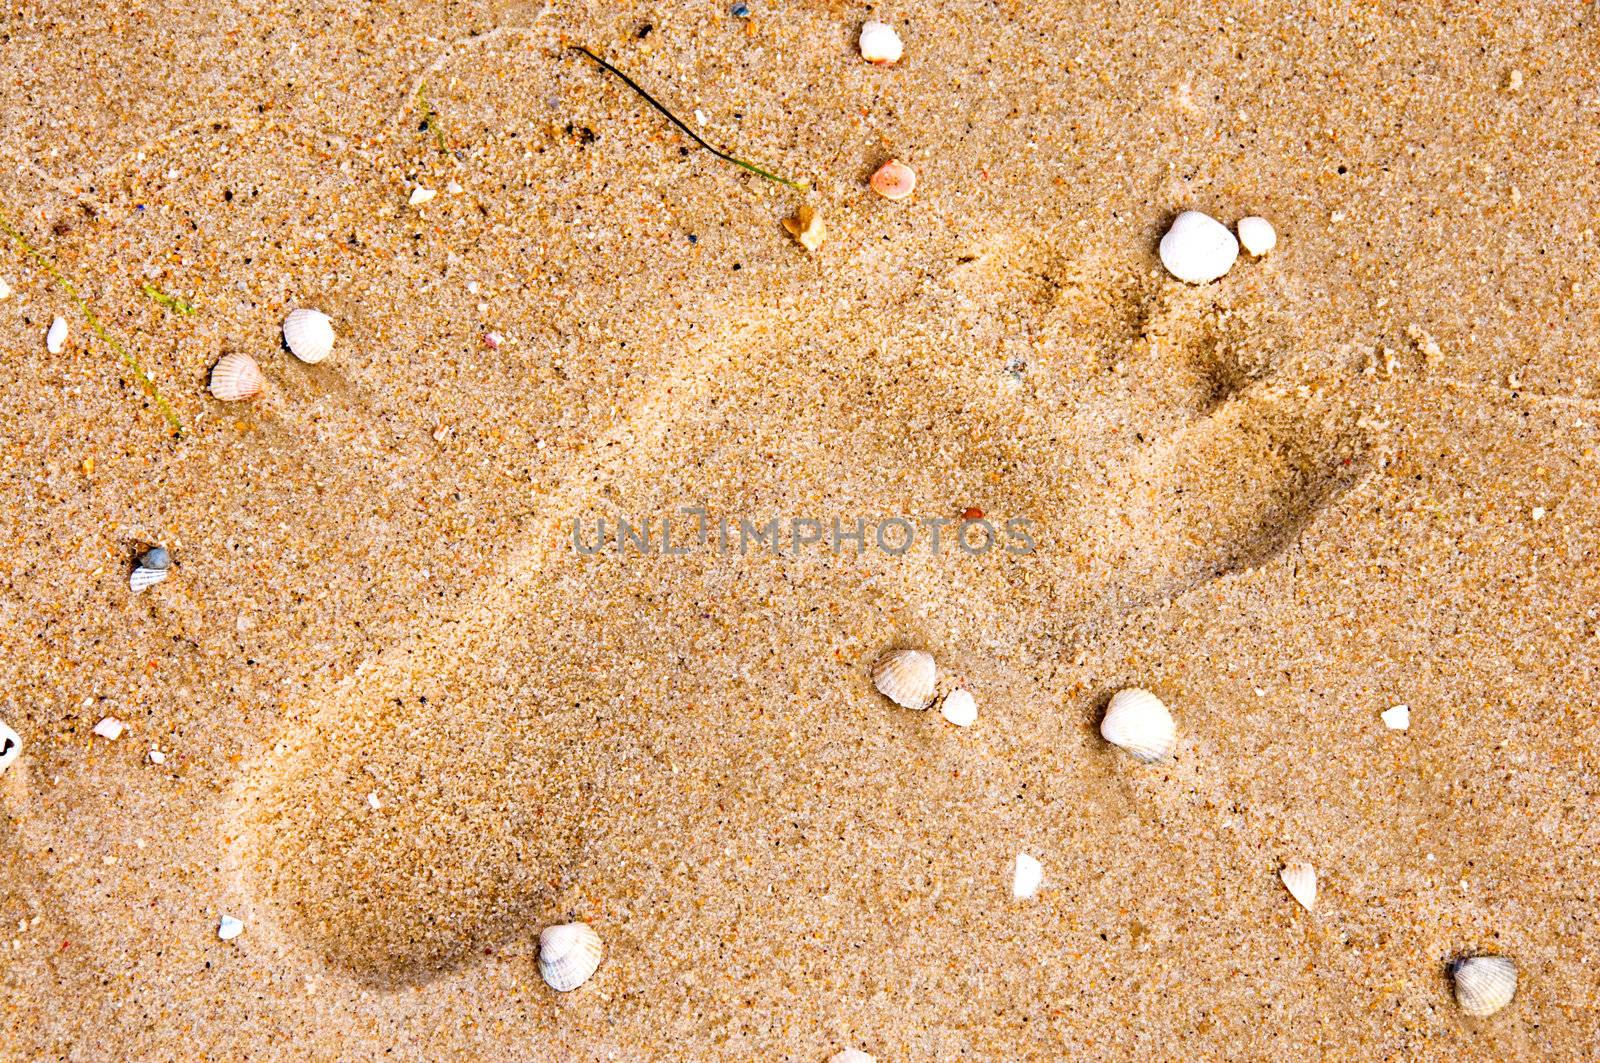 Footprint on sand with shells by iryna_rasko